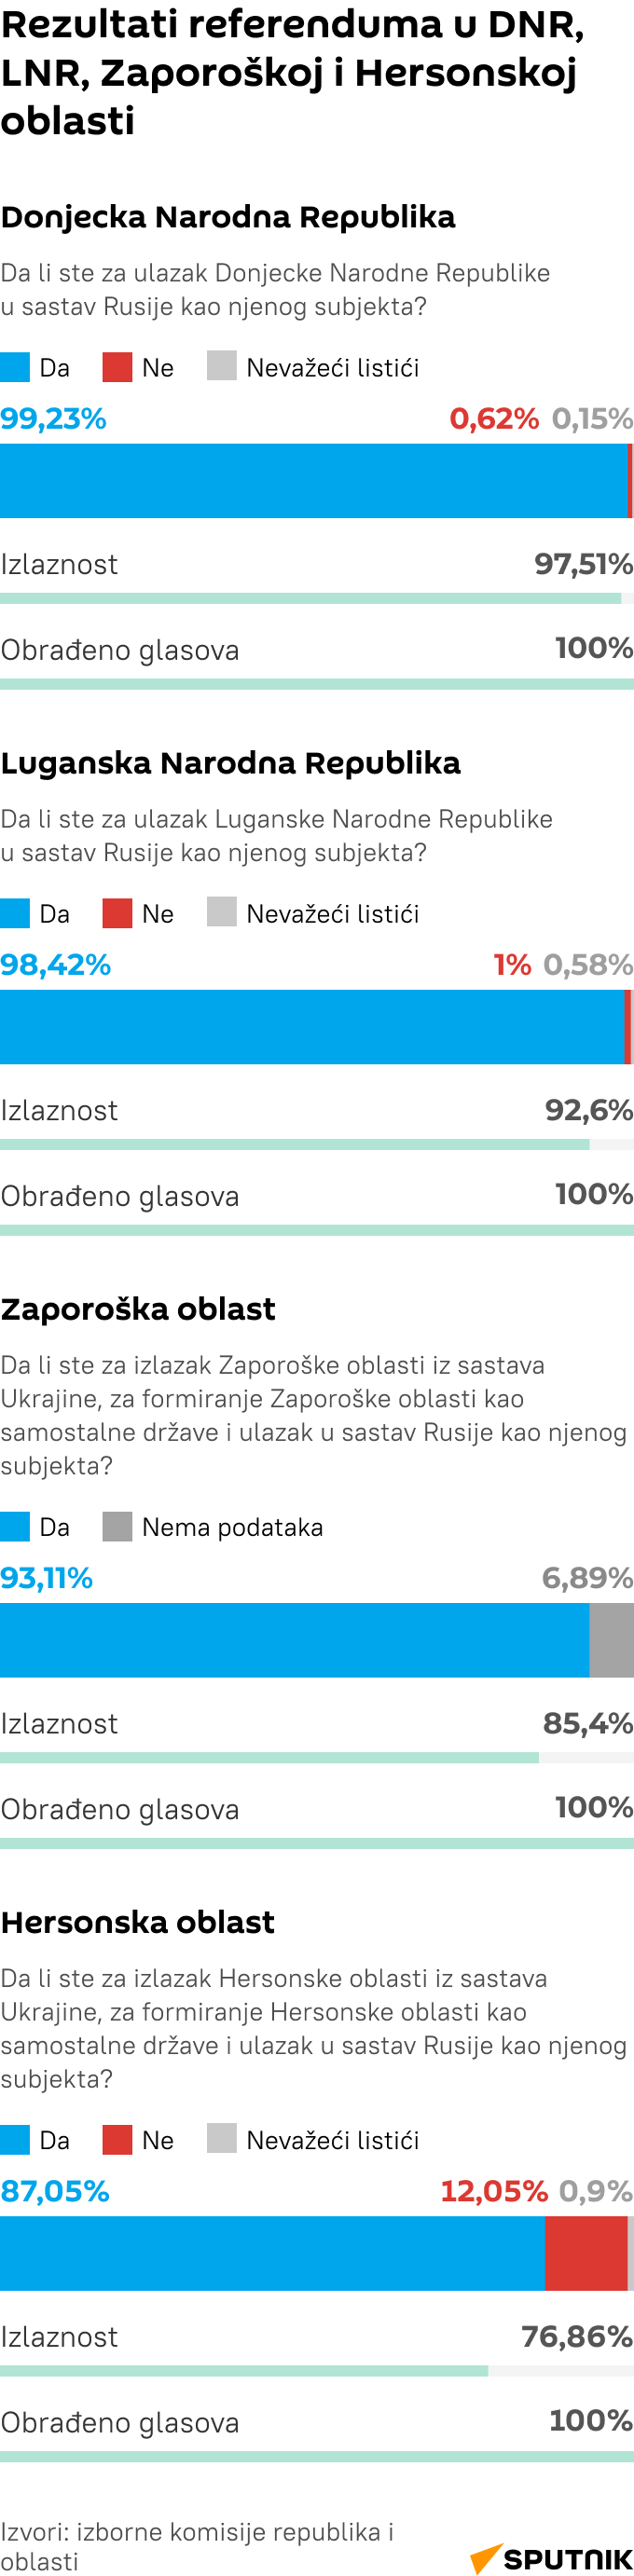 Infografika    Rezultati referenduma u DNR, LNR, Zaporoškoj i Hersonskoj oblasti LATINICA mob - Sputnik Srbija